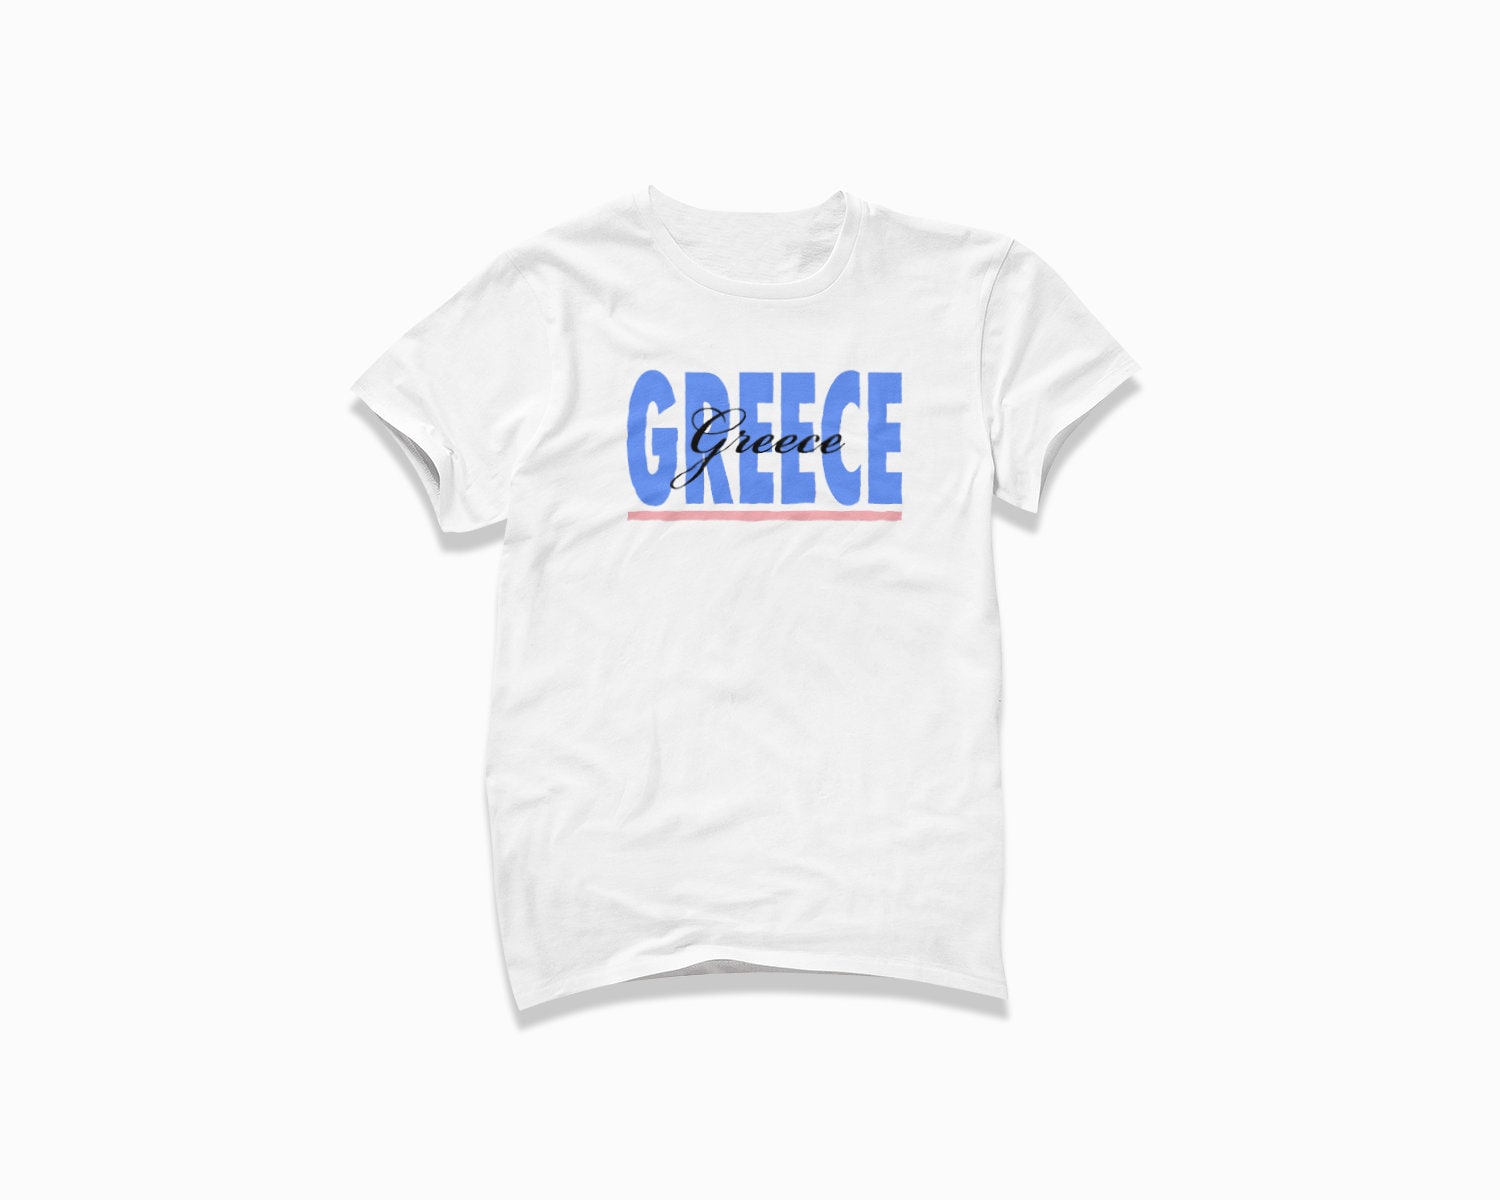 Griechenland Signatur Shirt T-Shirt/Retro Style Vintage Inspiriertes Kurzarm von HappyNewVintageShop